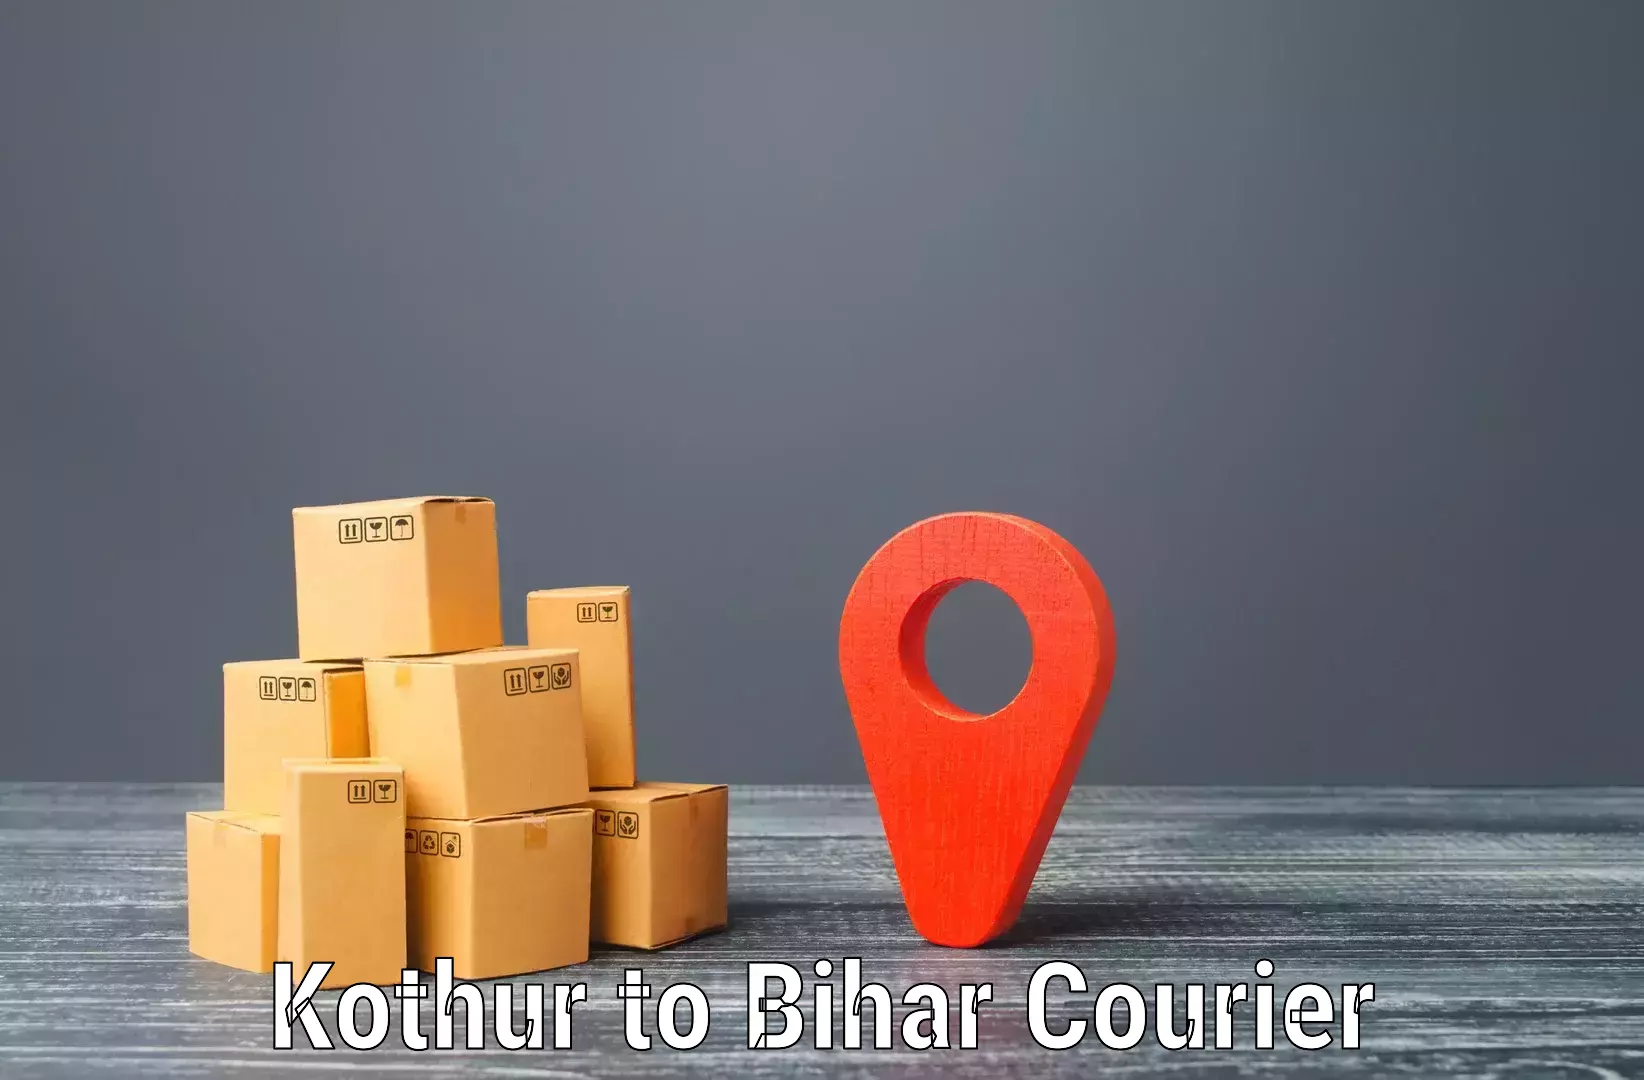 Ocean freight courier Kothur to Mashrakh